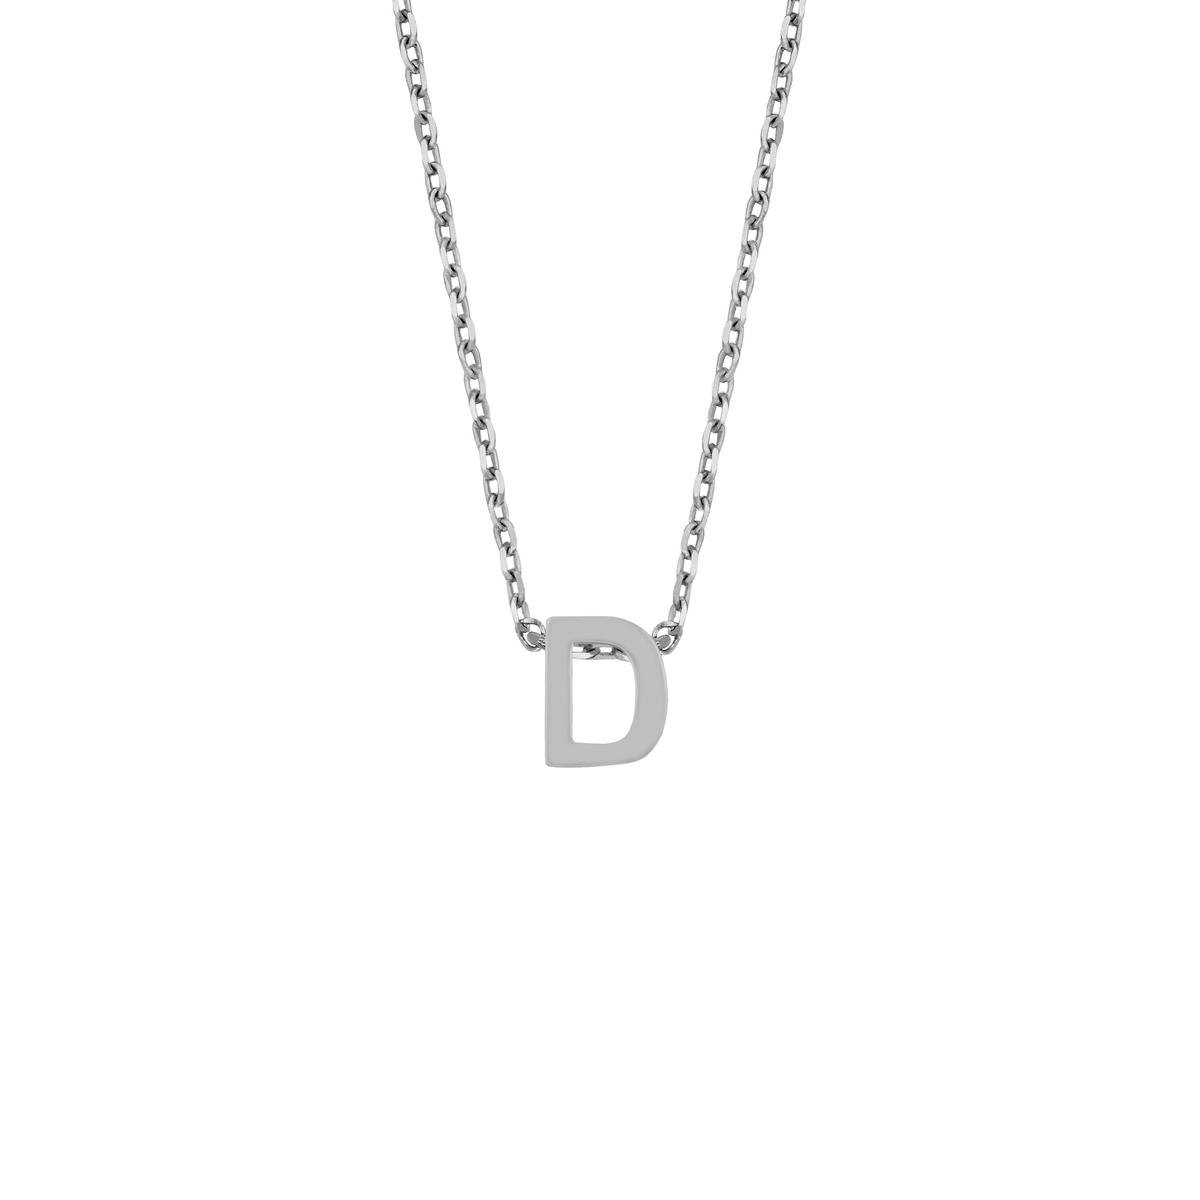 Cadeau voor haar New Bling 9NB 907D Zilveren Ketting Dames - letterhanger - D - Zilverkleurig